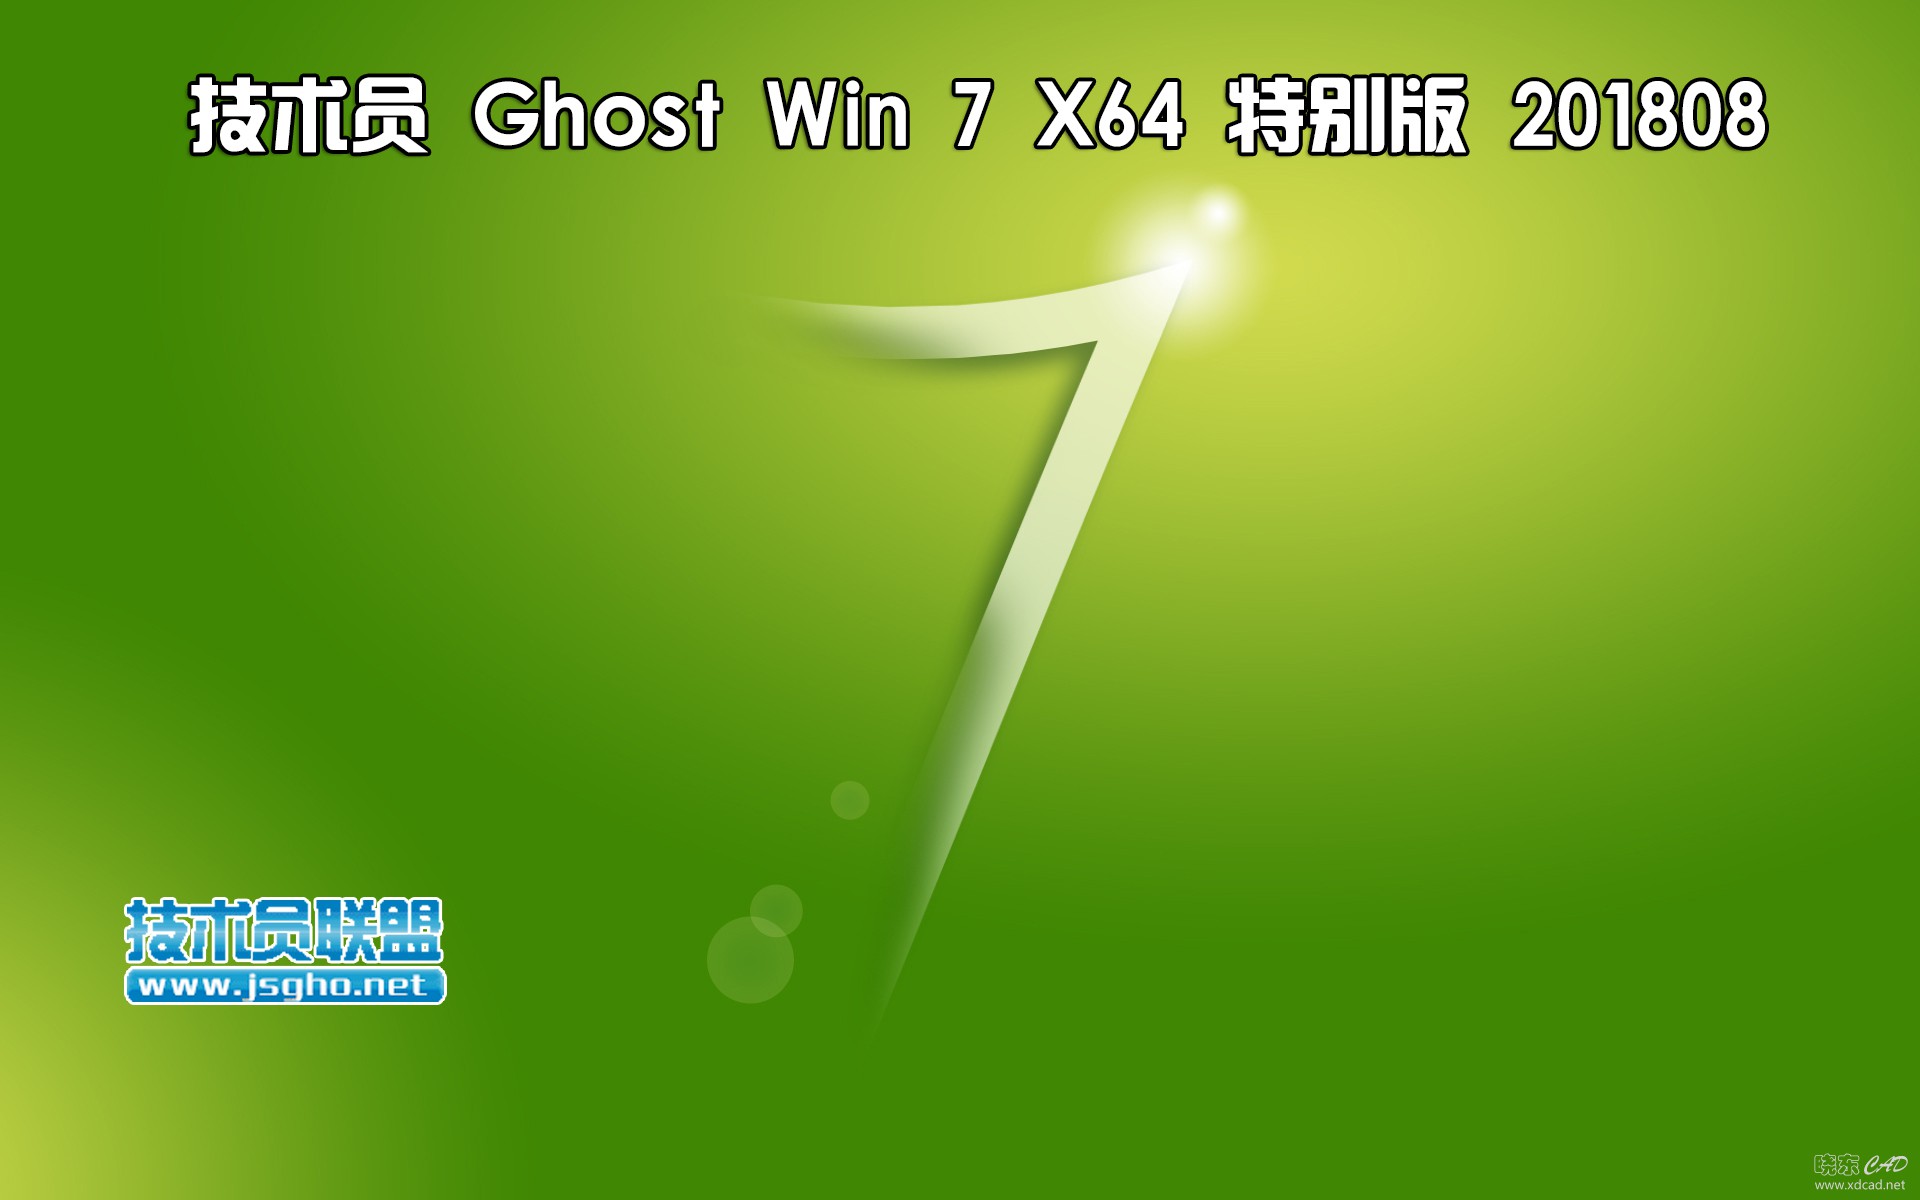 技术员 Ghost Win 7 Sp1（x86/x64）特别版 2018-1.jpg